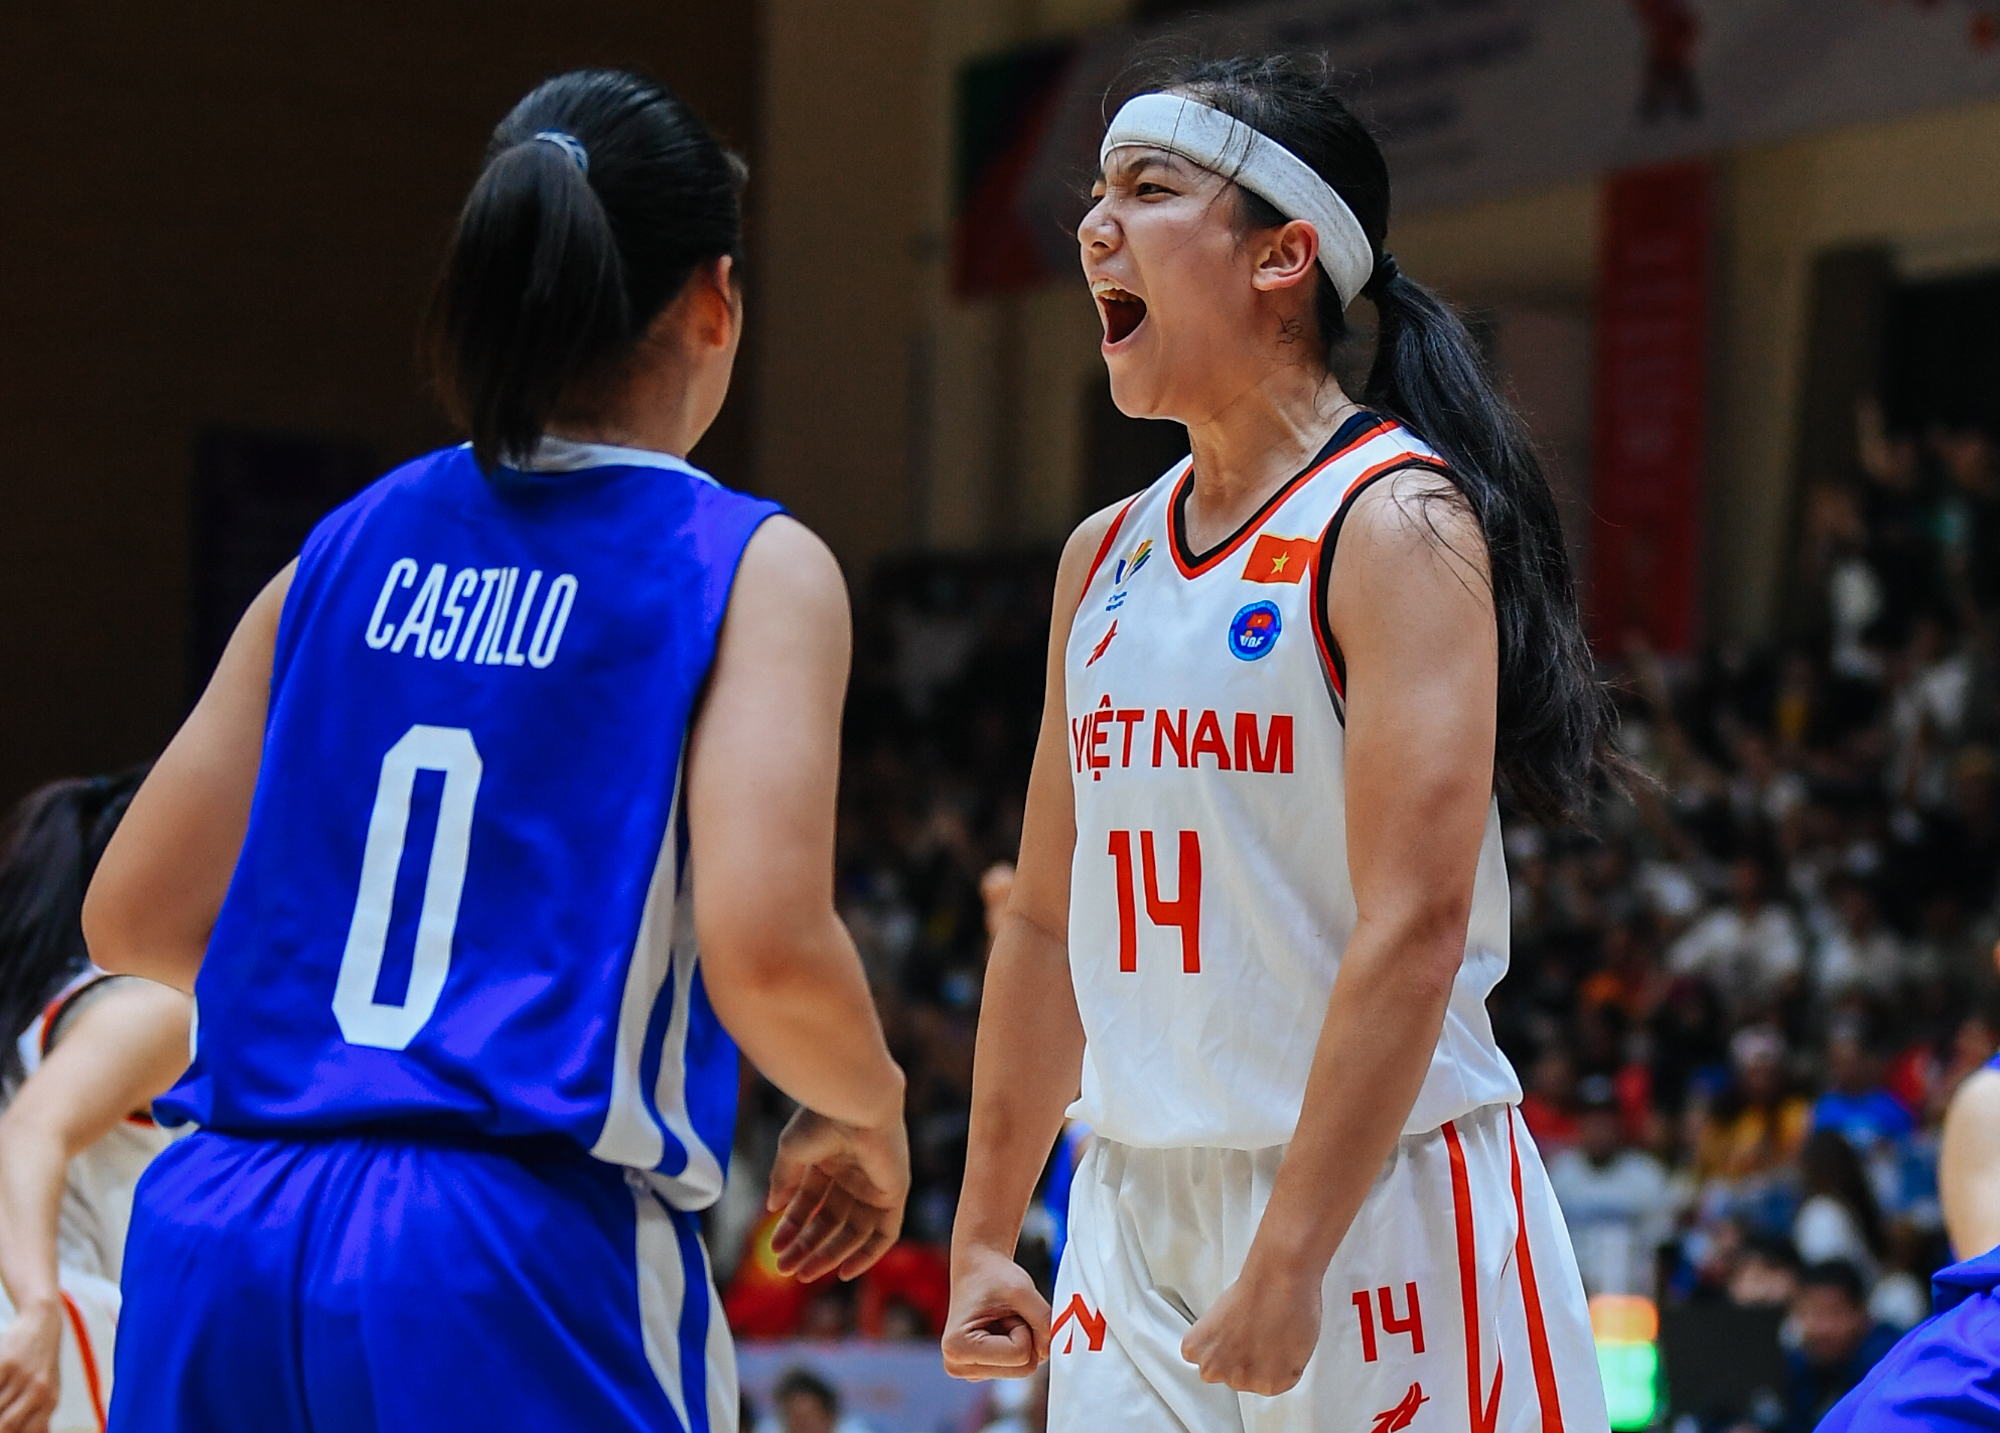 Khoảnh khắc thi đấu đầy máu lửa nhưng không kém phần xinh đẹp của Trương Thảo Vy trong trận thua tuyển bóng rổ nữ Philippines - Ảnh 5.